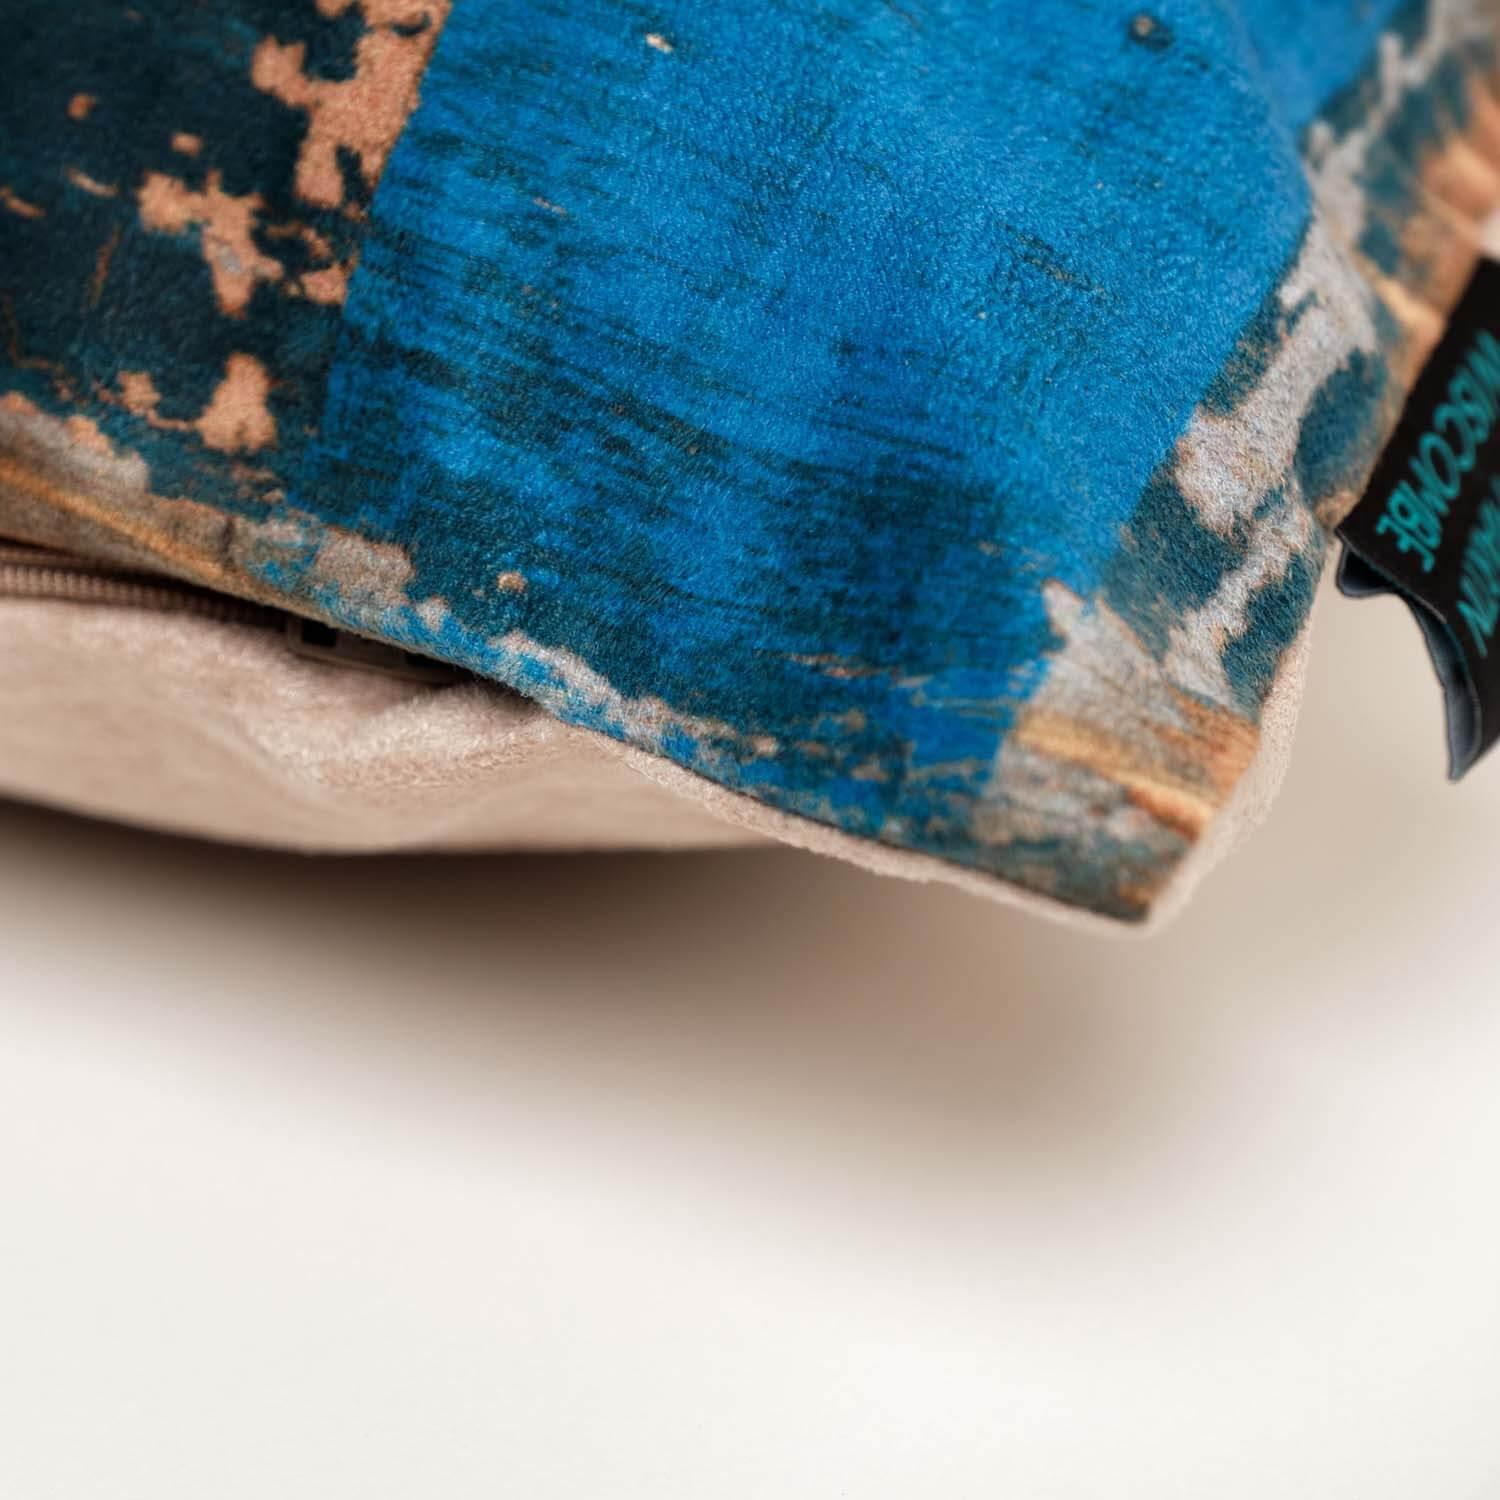 Jack Russell - Martin Wiscombe - Art Print Cushion - Handmade Cushions UK - WeLoveCushions